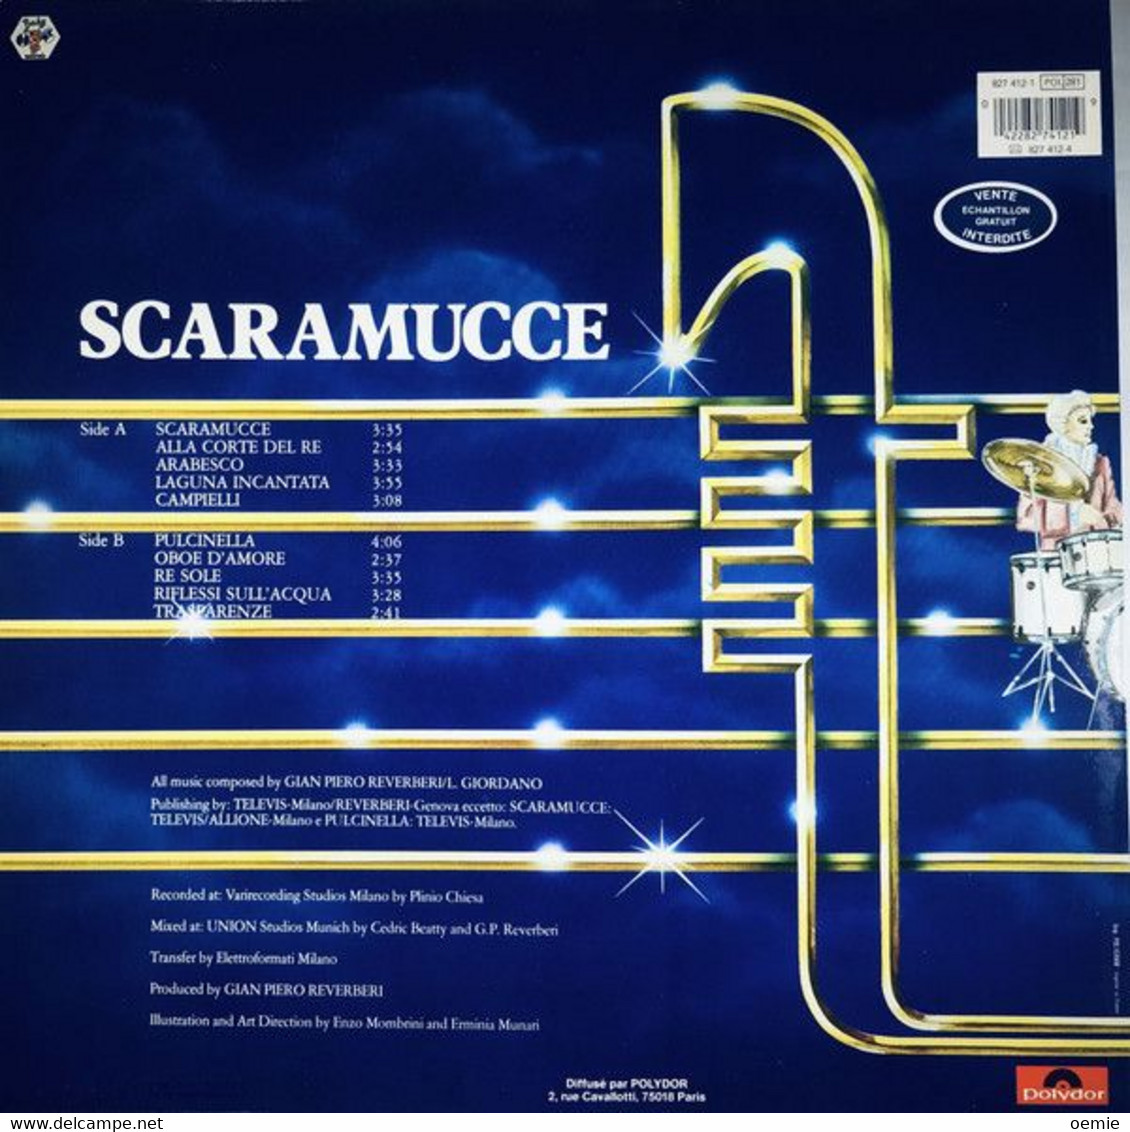 RONDO VENEZIANO   ° SCARAMUCCE - Altri - Musica Italiana